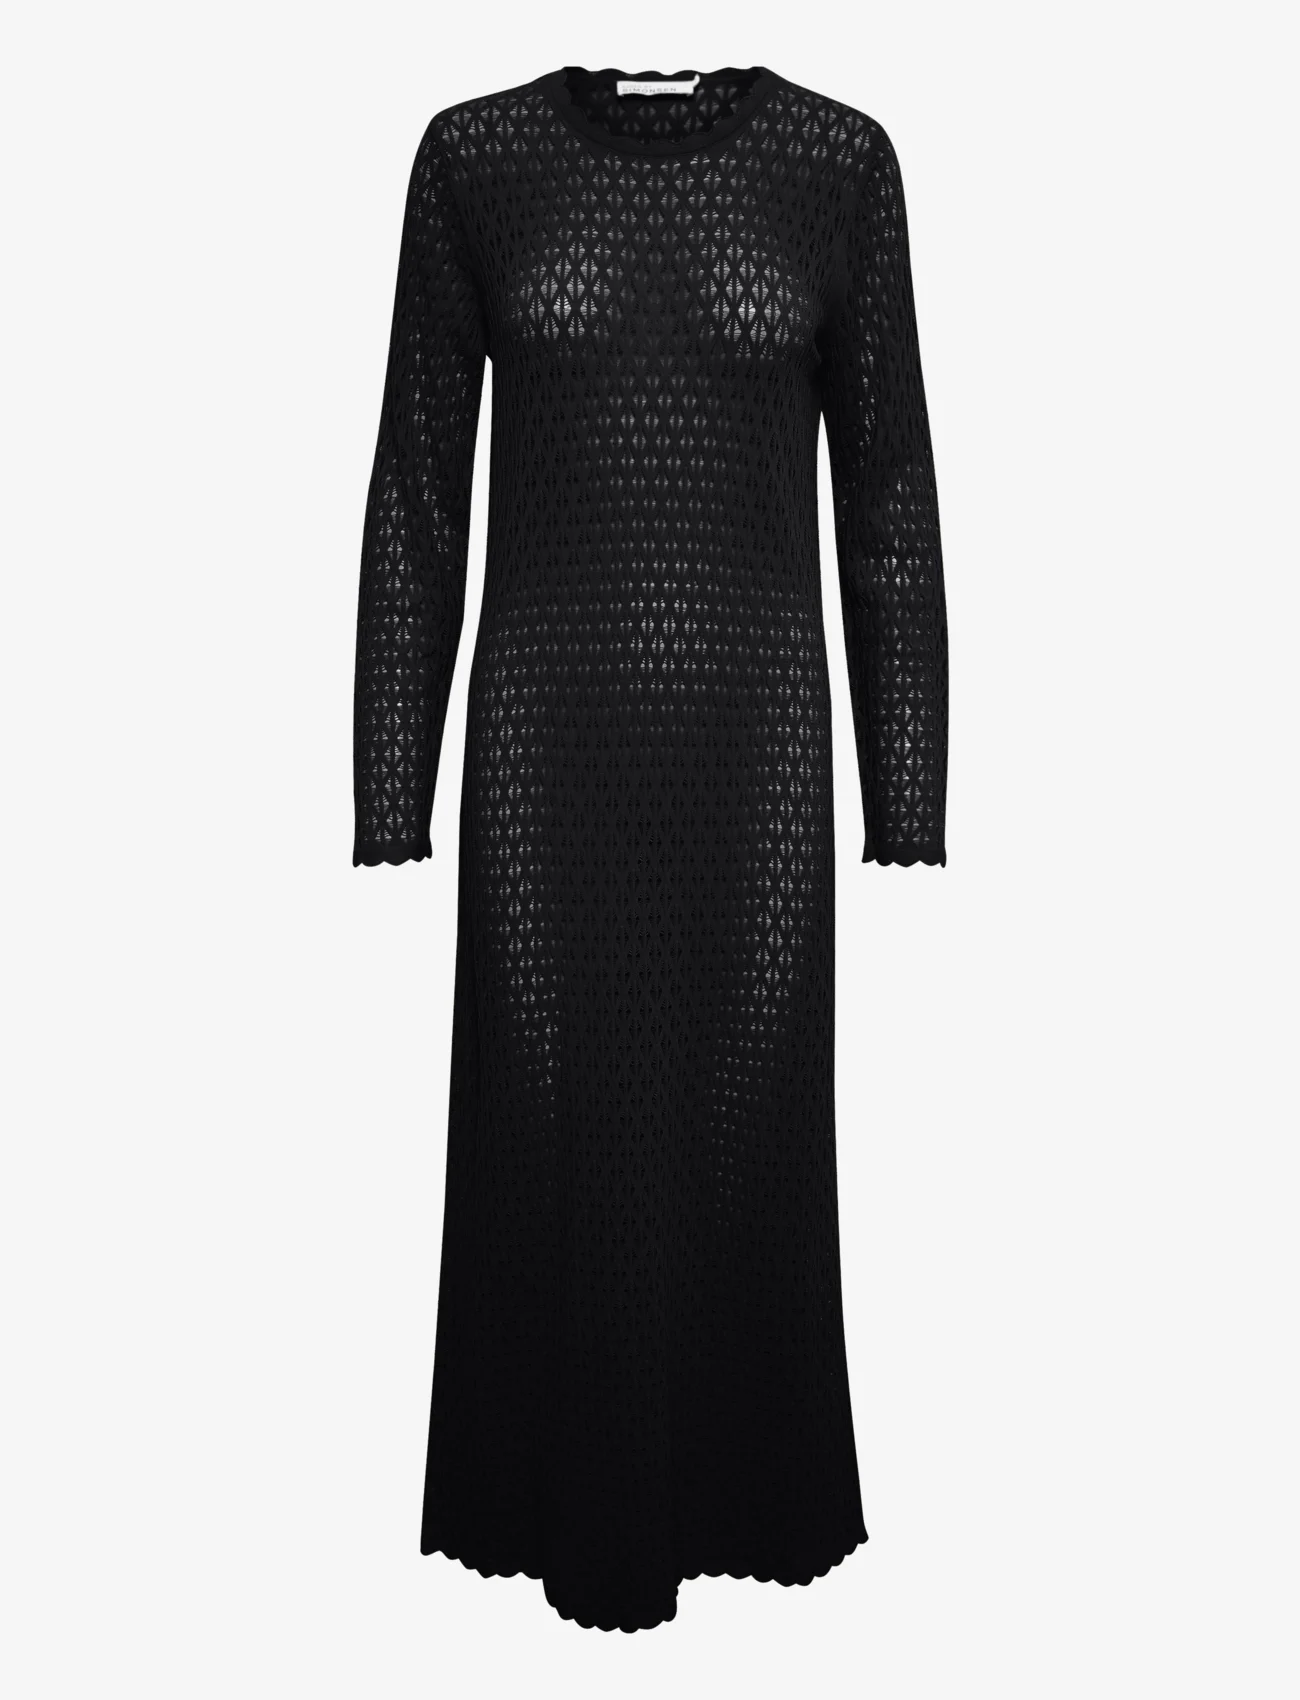 Karen By Simonsen - NaomiKB Dress - knitted dresses - meteorite - 0